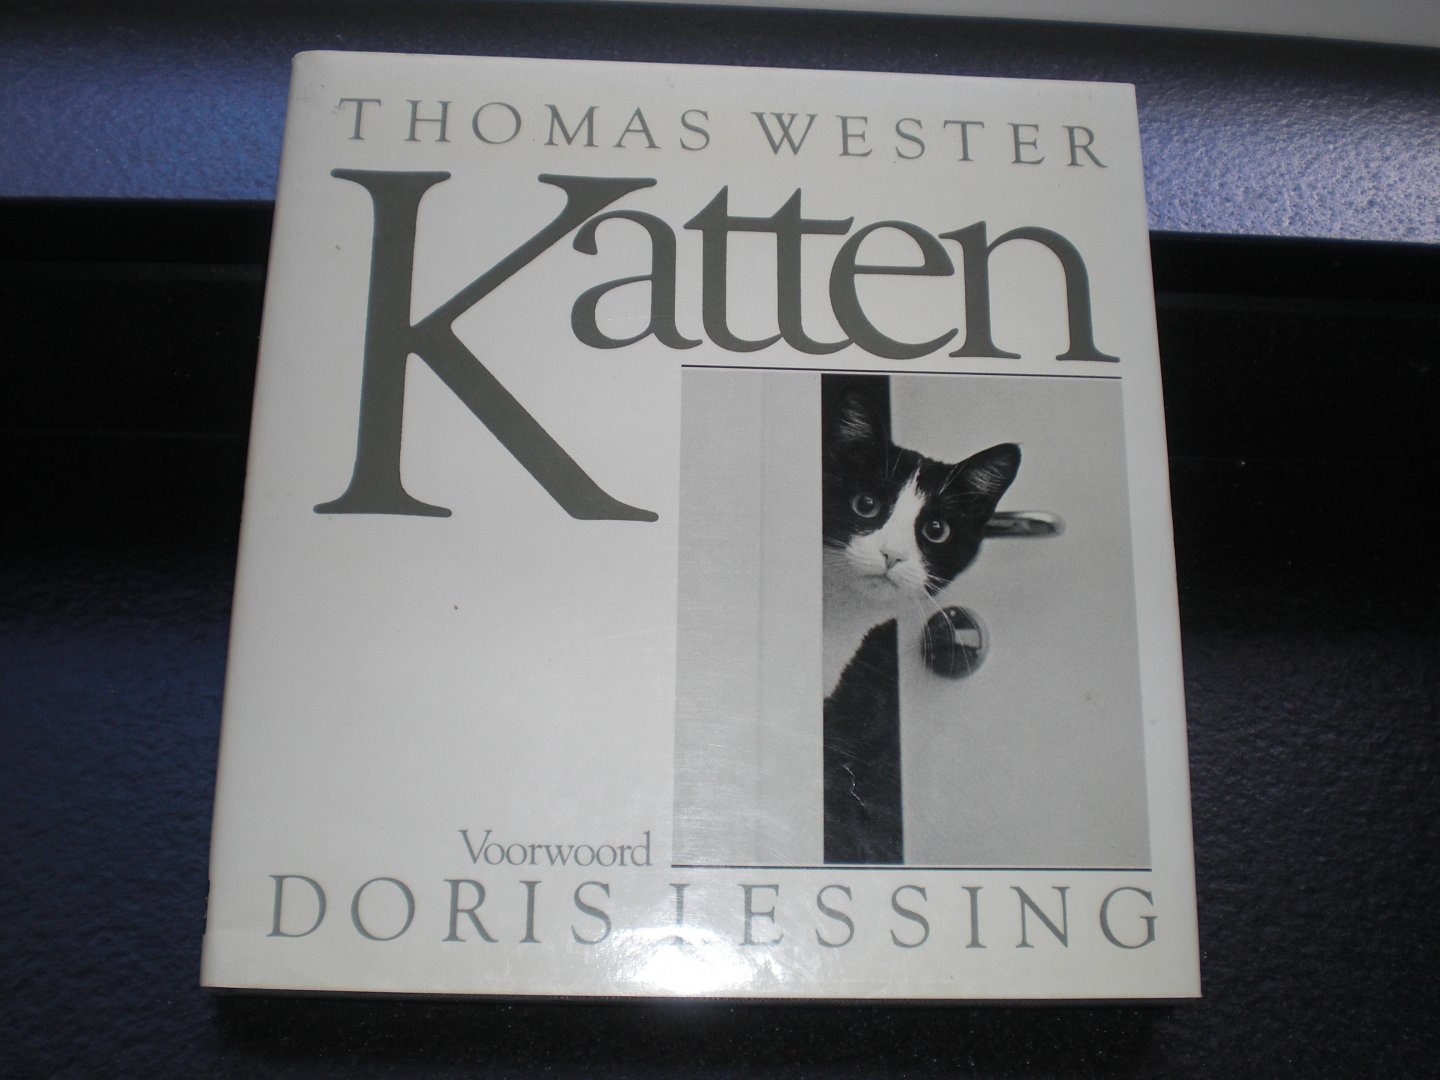 Wester Thomas - Katten